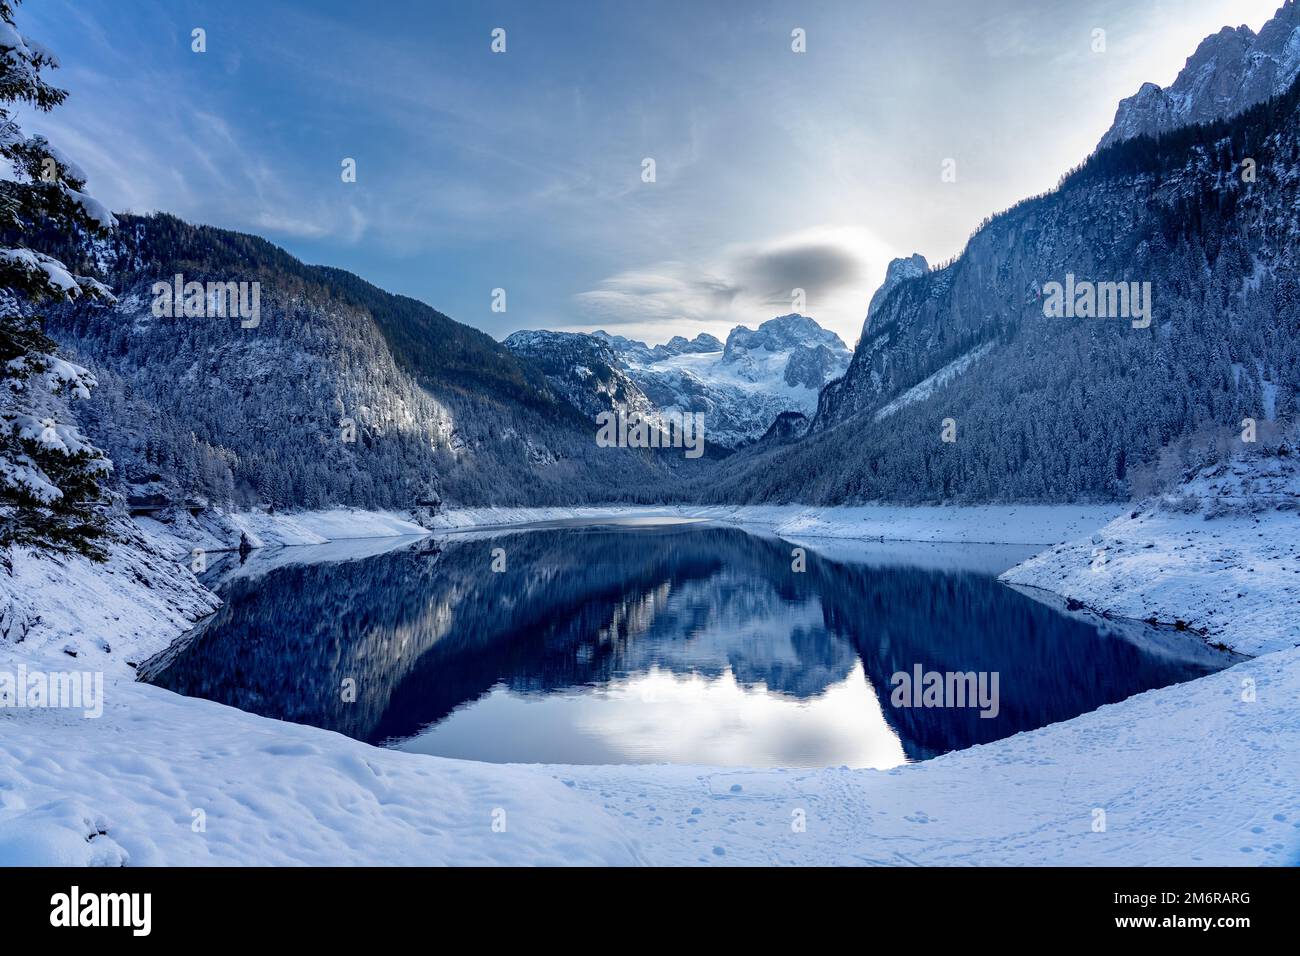 Magnifique paysage d'hiver enneigé avec la montagne de Dachstein et Goausee en Autriche près de Hallstatt . Banque D'Images